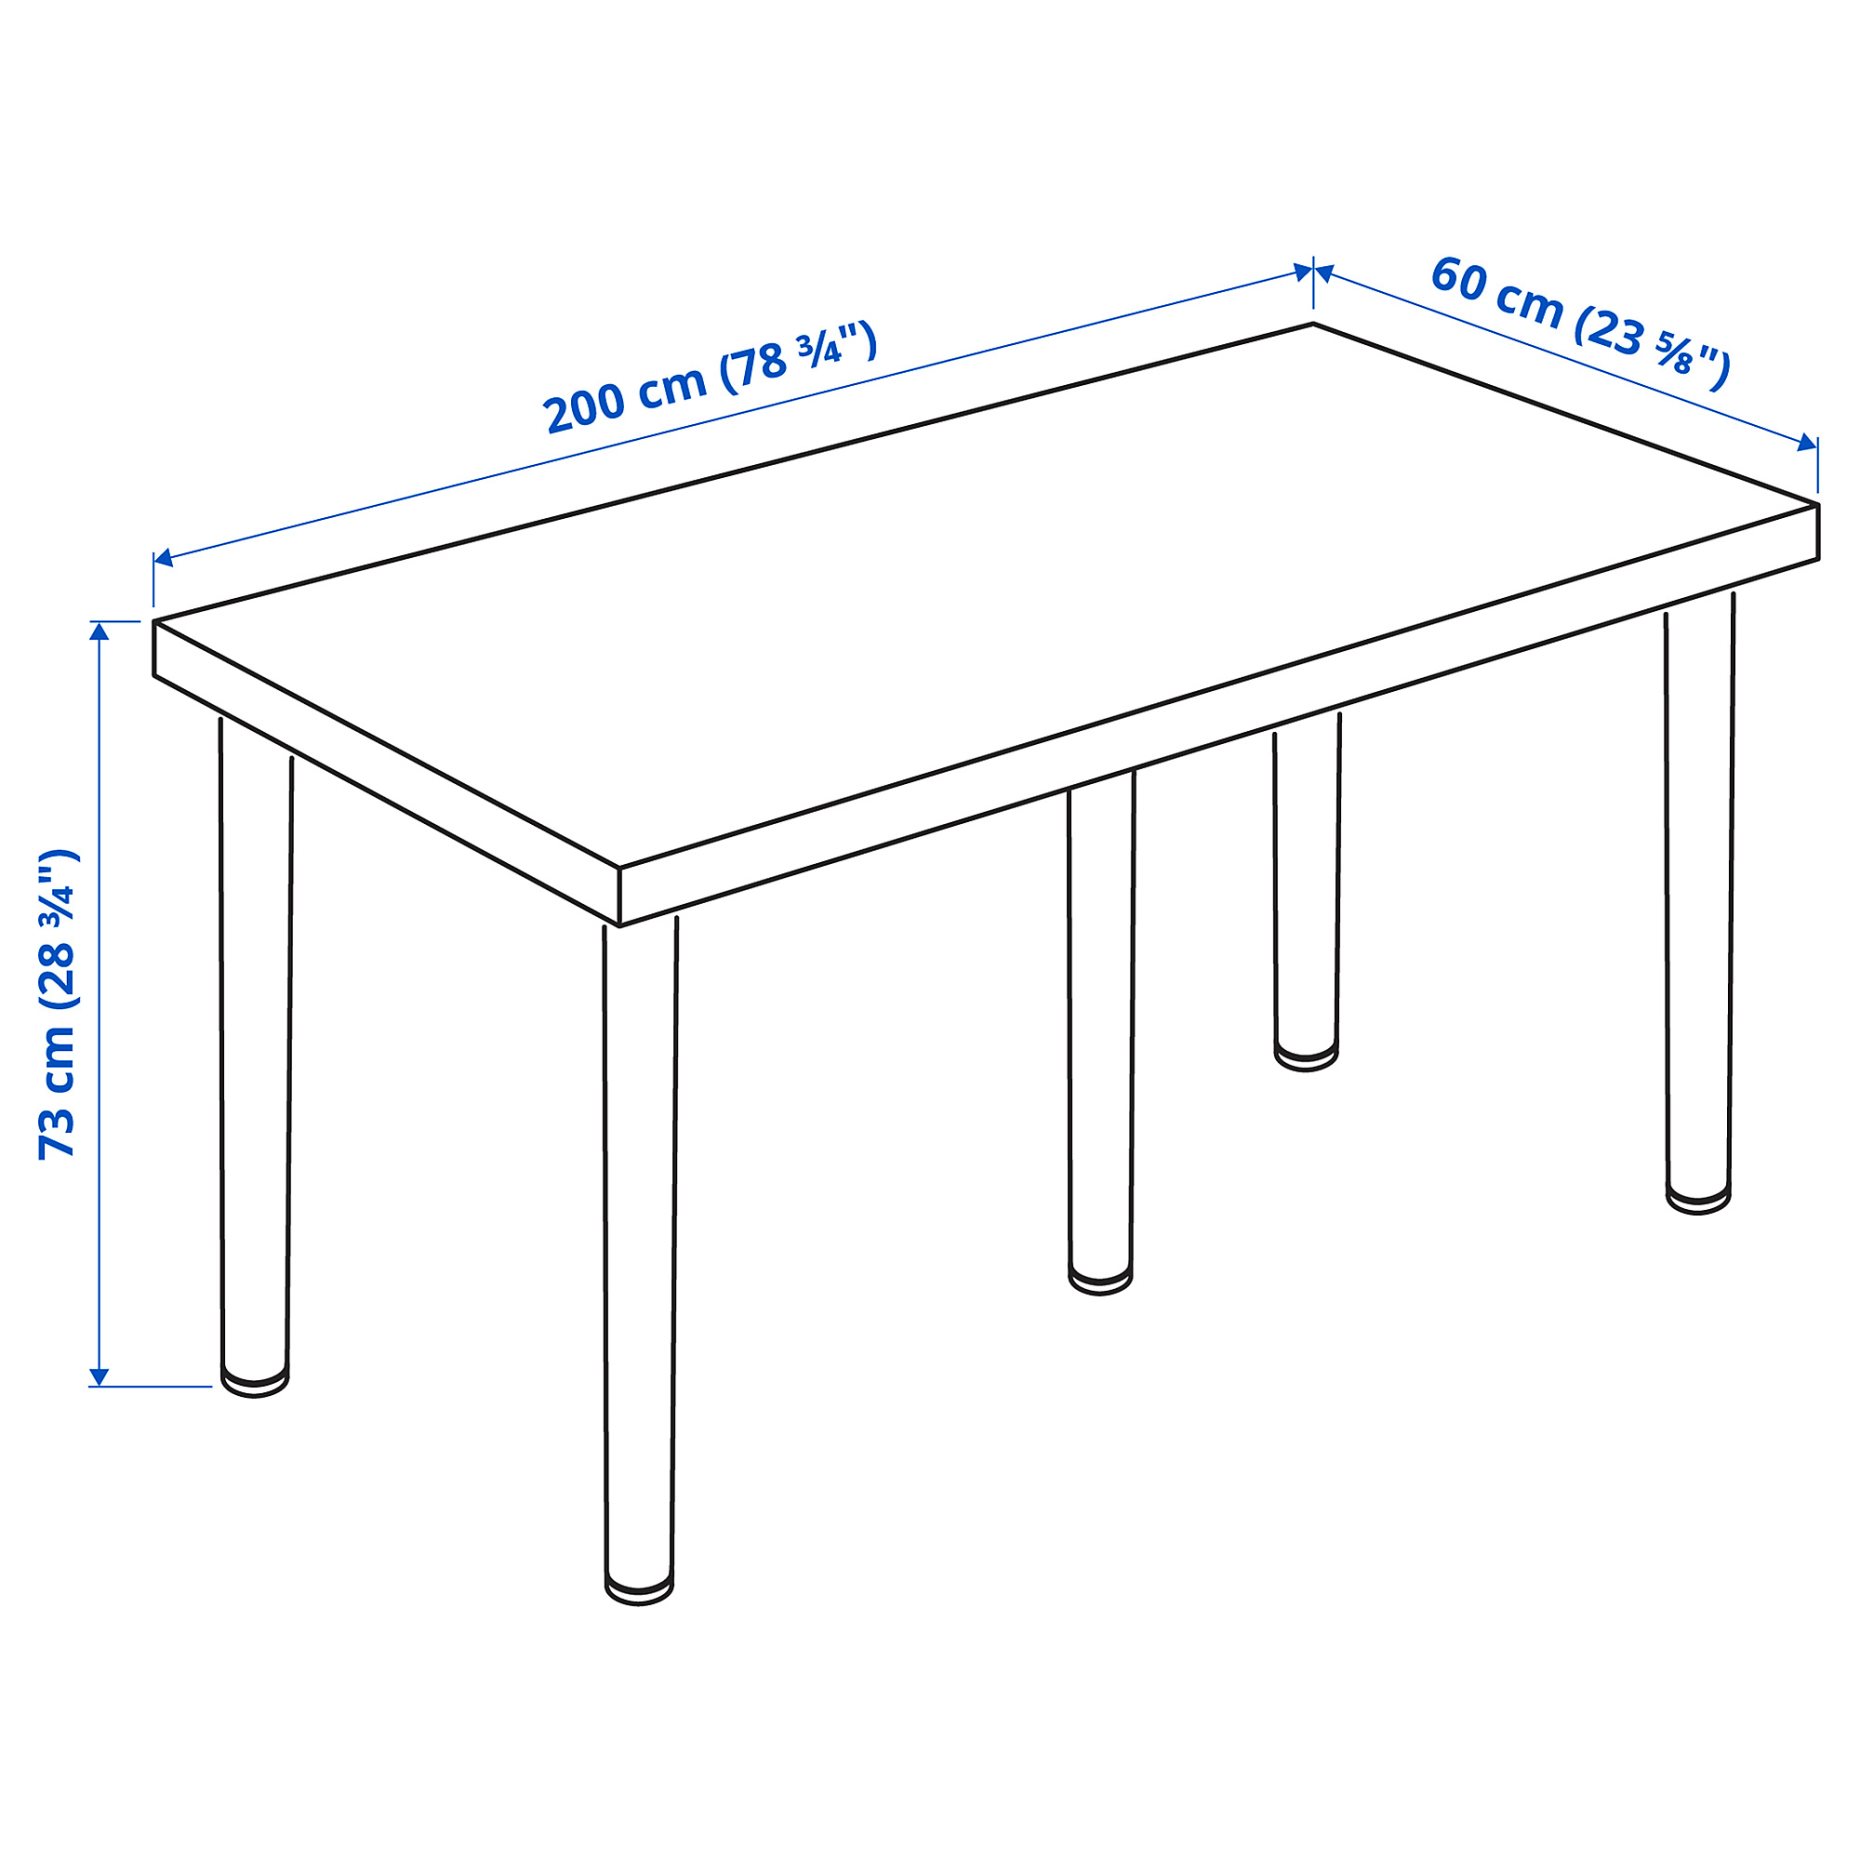 LAGKAPTEN/ADILS, desk, 200x60 cm, 494.176.29